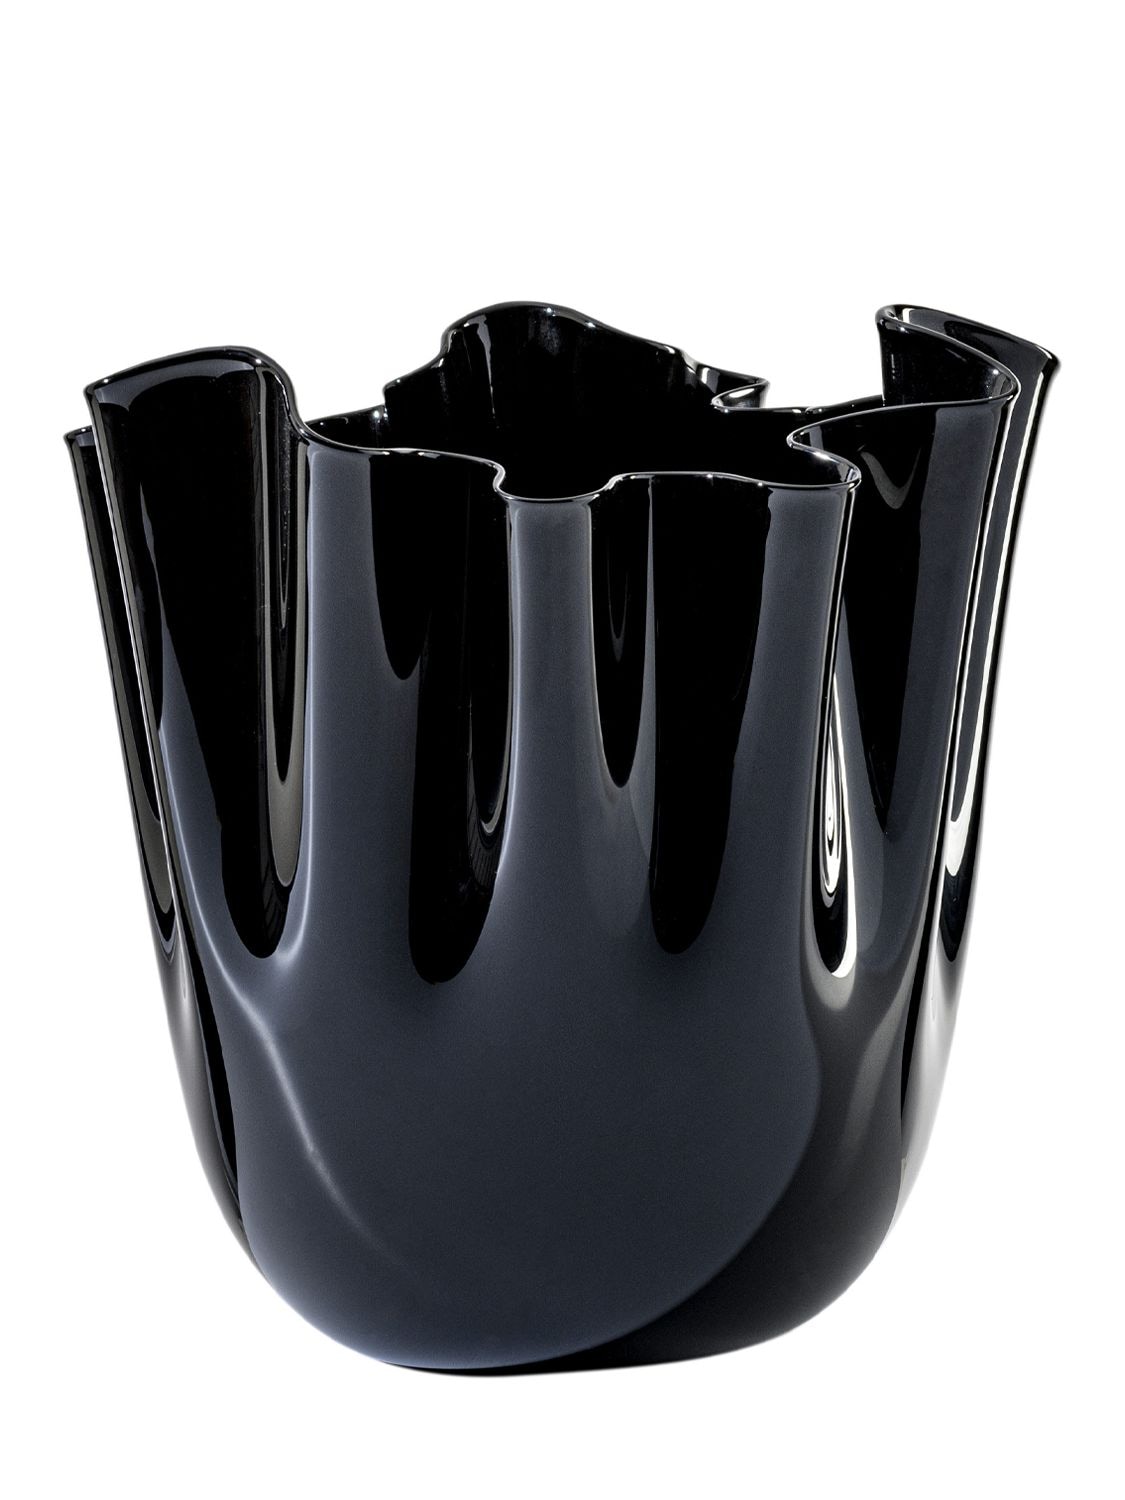 Venini Fazzoletto Opalino Vase In Black